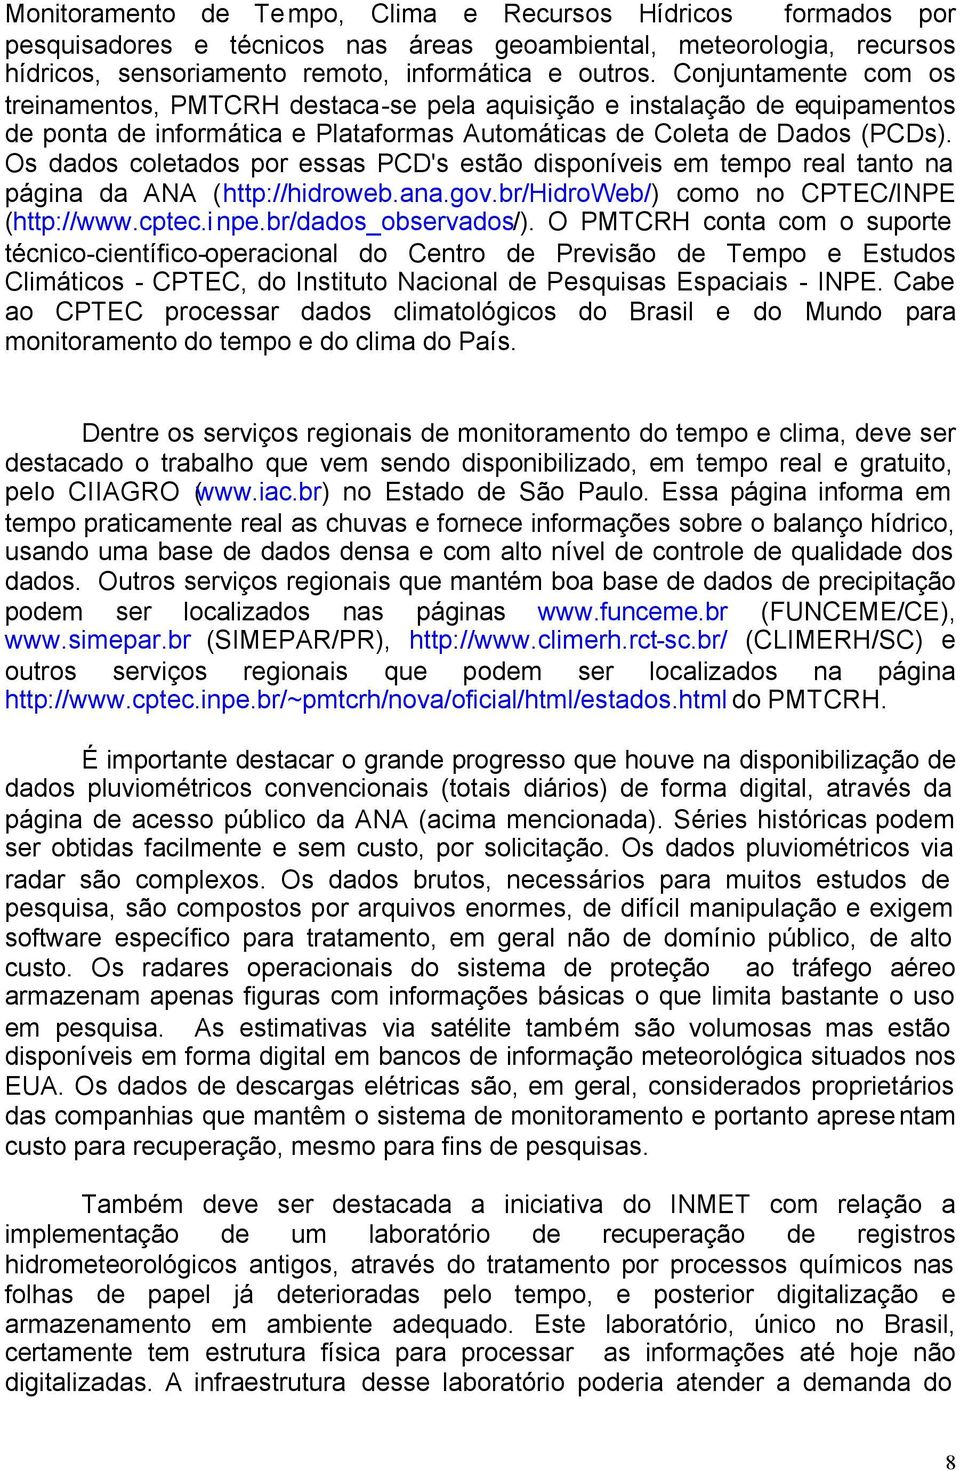 Os dados coletados por essas PCD's estão disponíveis em tempo real tanto na página da ANA (http://hidroweb.ana.gov.br/hidroweb/) como no CPTEC/INPE (http://www.cptec.inpe.br/dados_observados/).